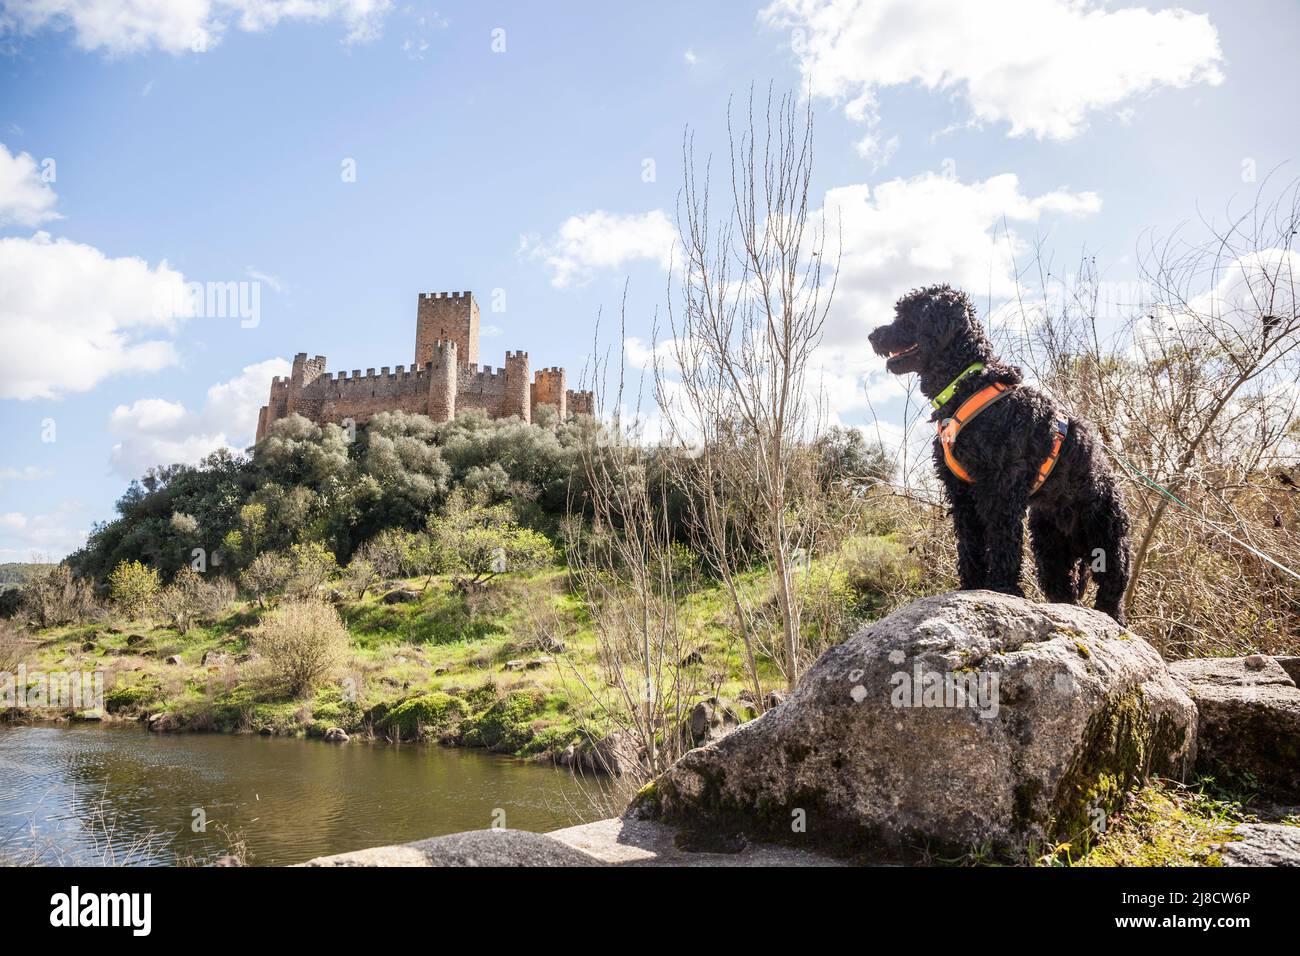 Vue depuis les rives du fleuve Tajo vers le château d'Almourol, situé au milieu d'une île avec un chien d'eau portugais en face Banque D'Images